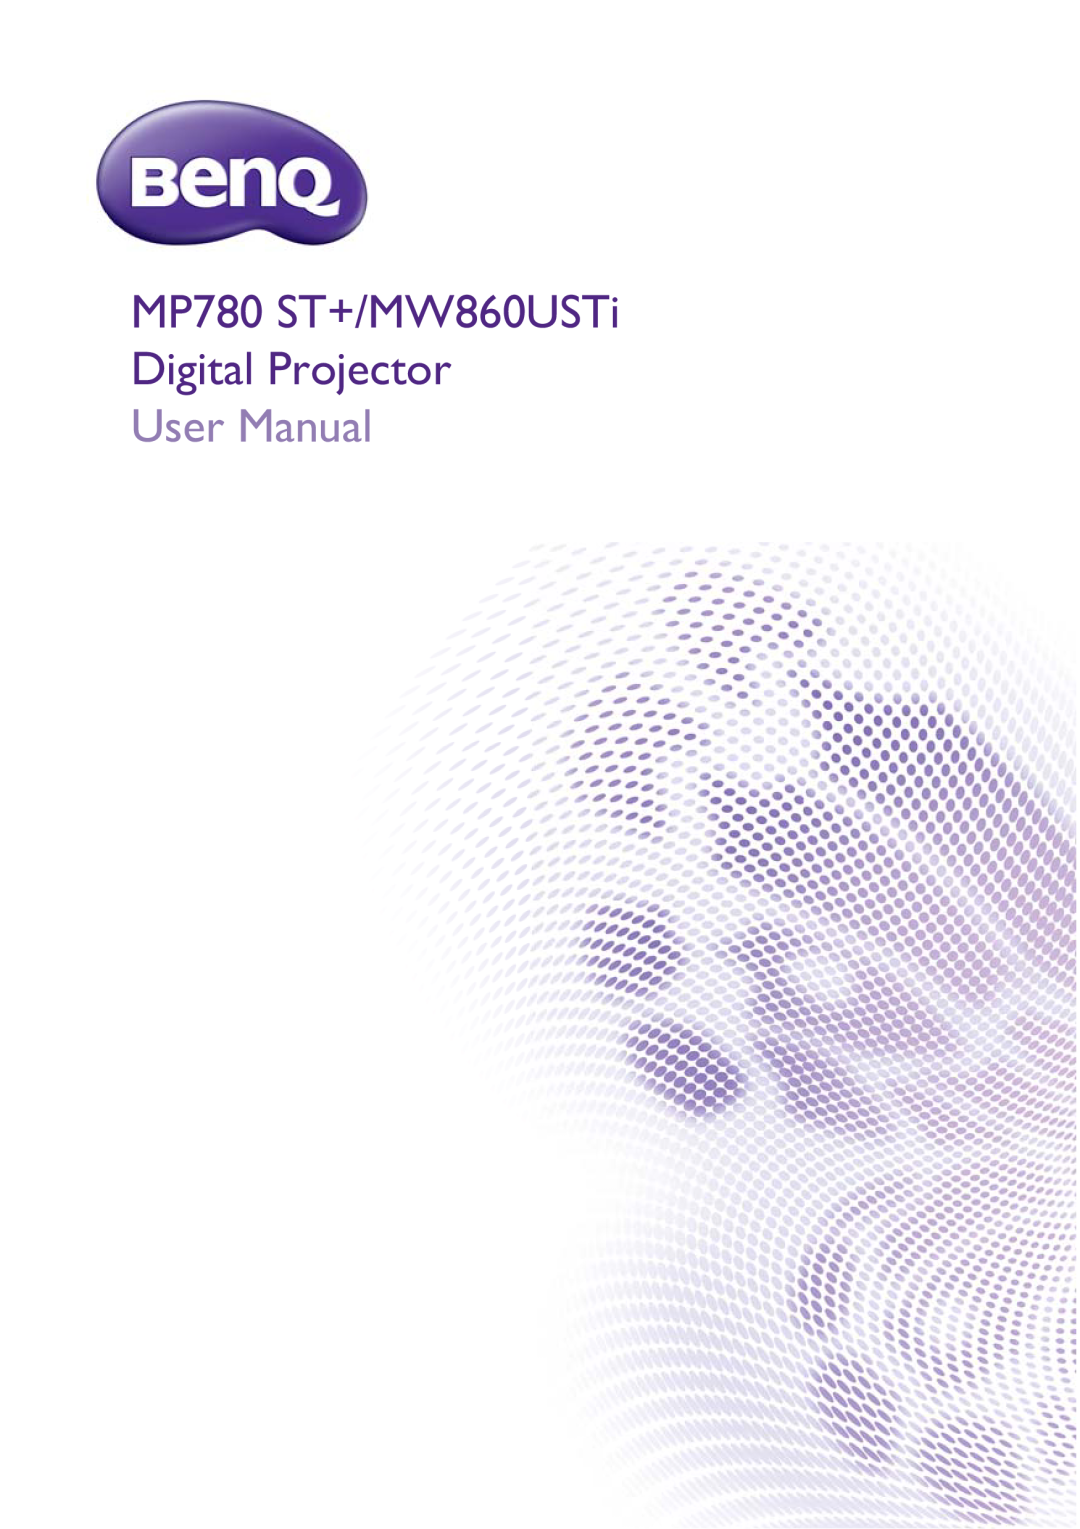 BenQ user manual MP780 ST+/MW860USTi Digital Projector, User Man ual 